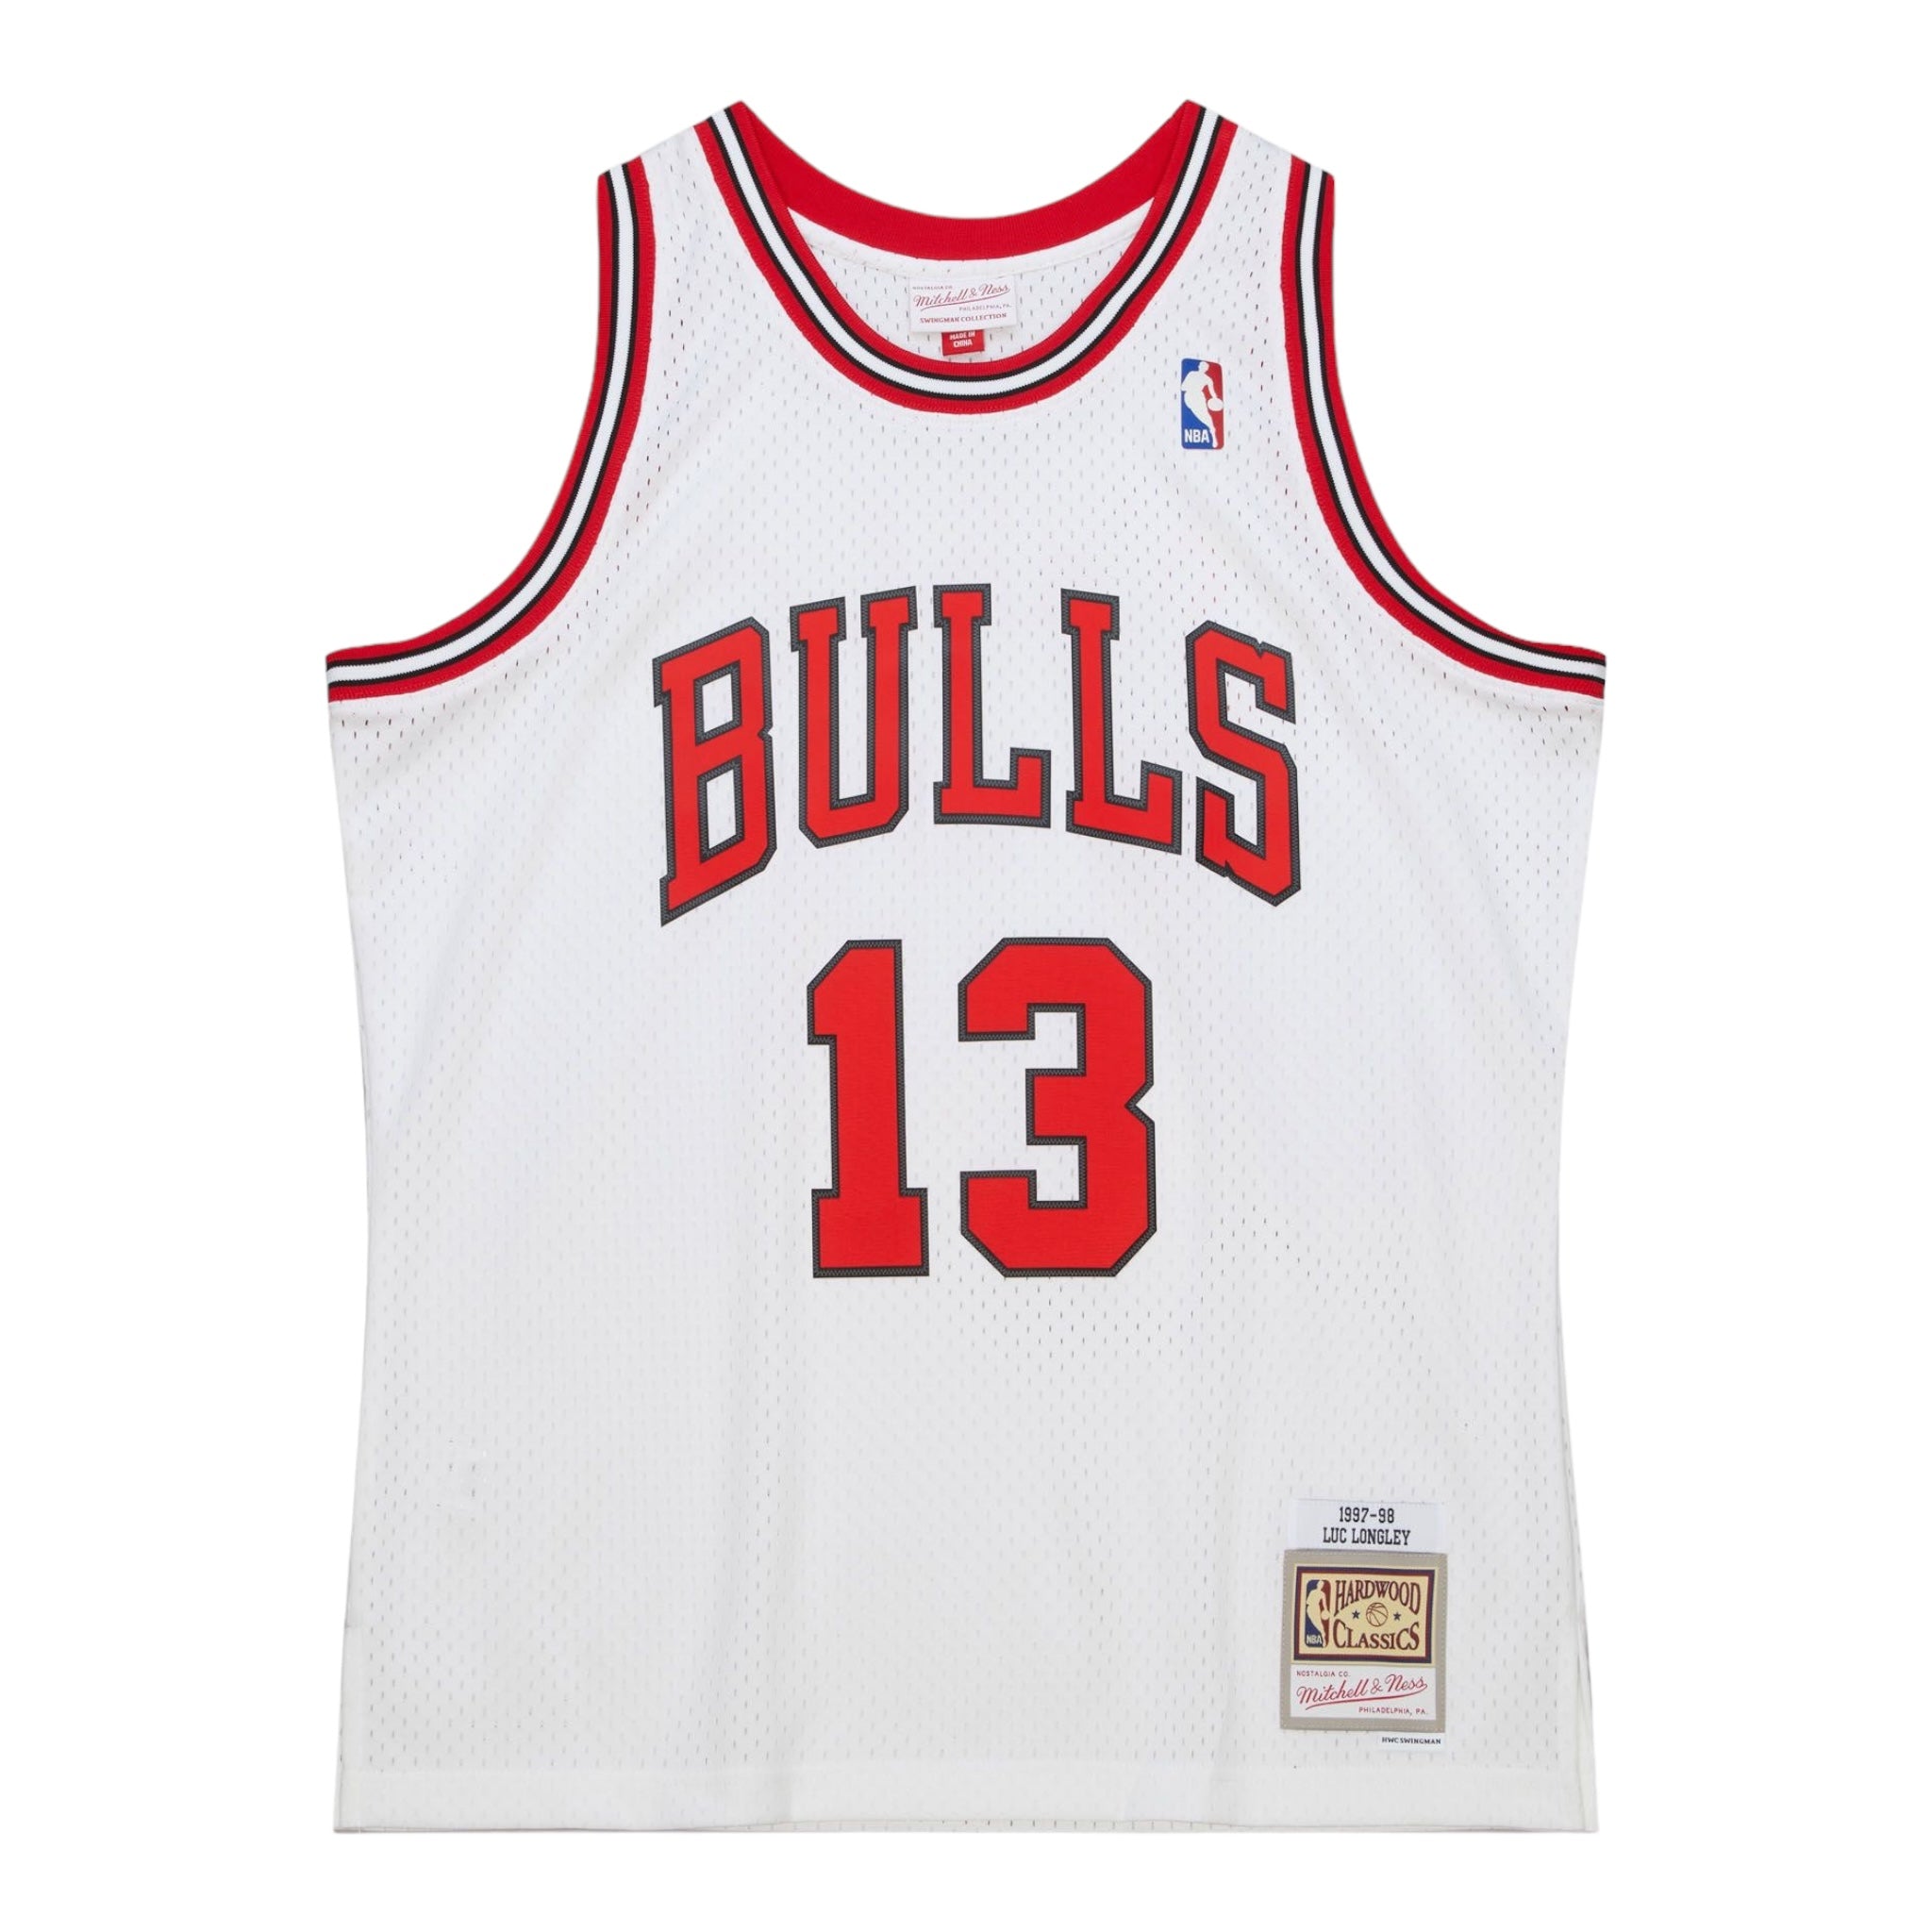 MITCHELL & NESS: Bulls Longley Jersey